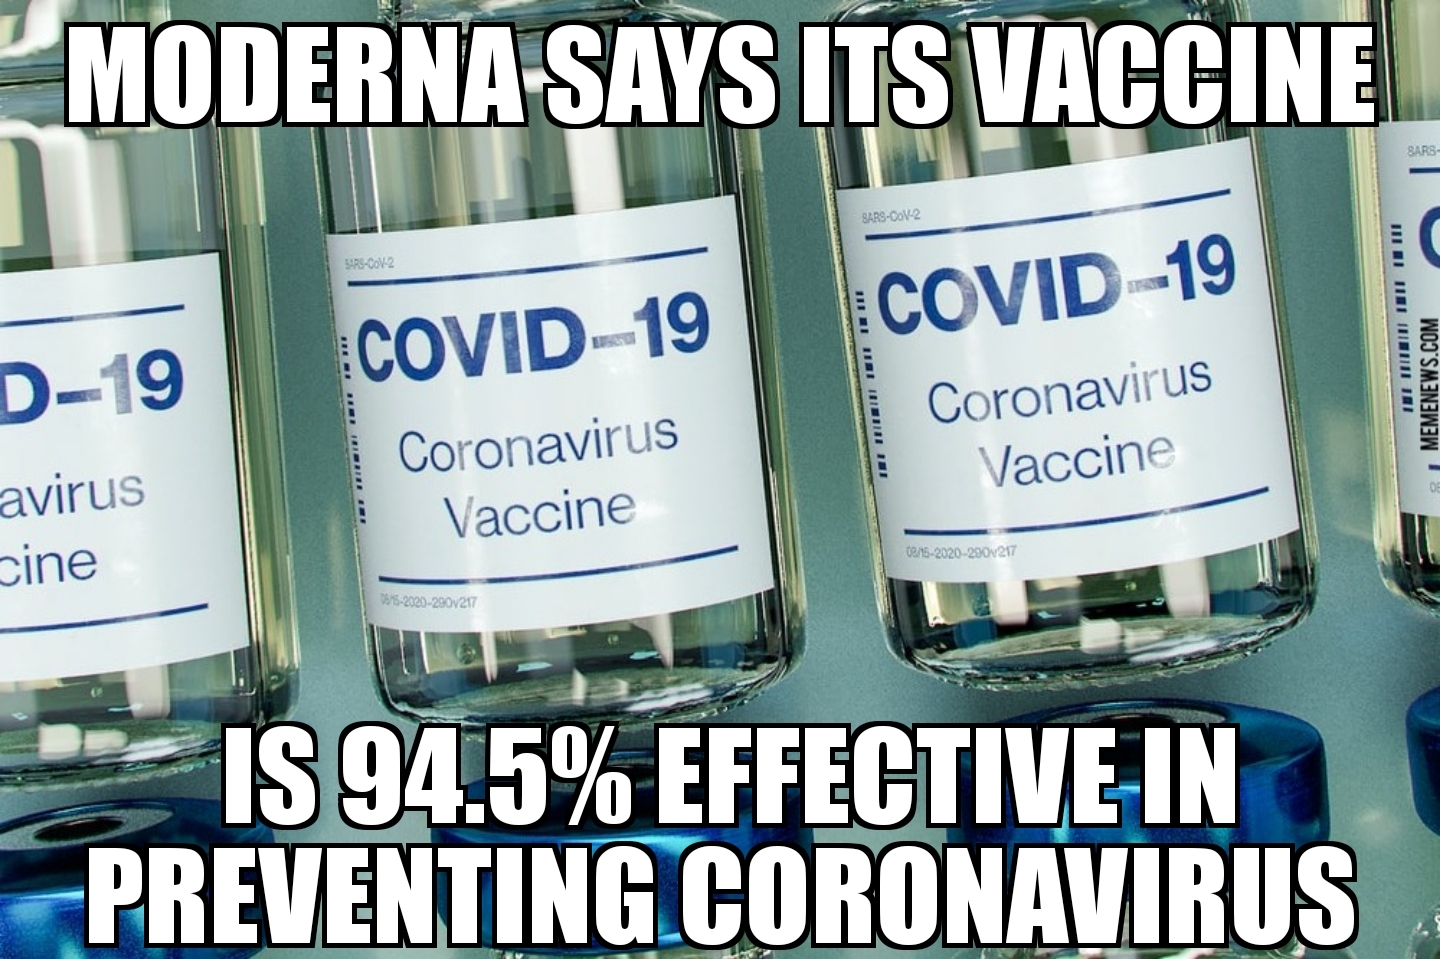 Moderna coronavirus vaccine 94.5% effective